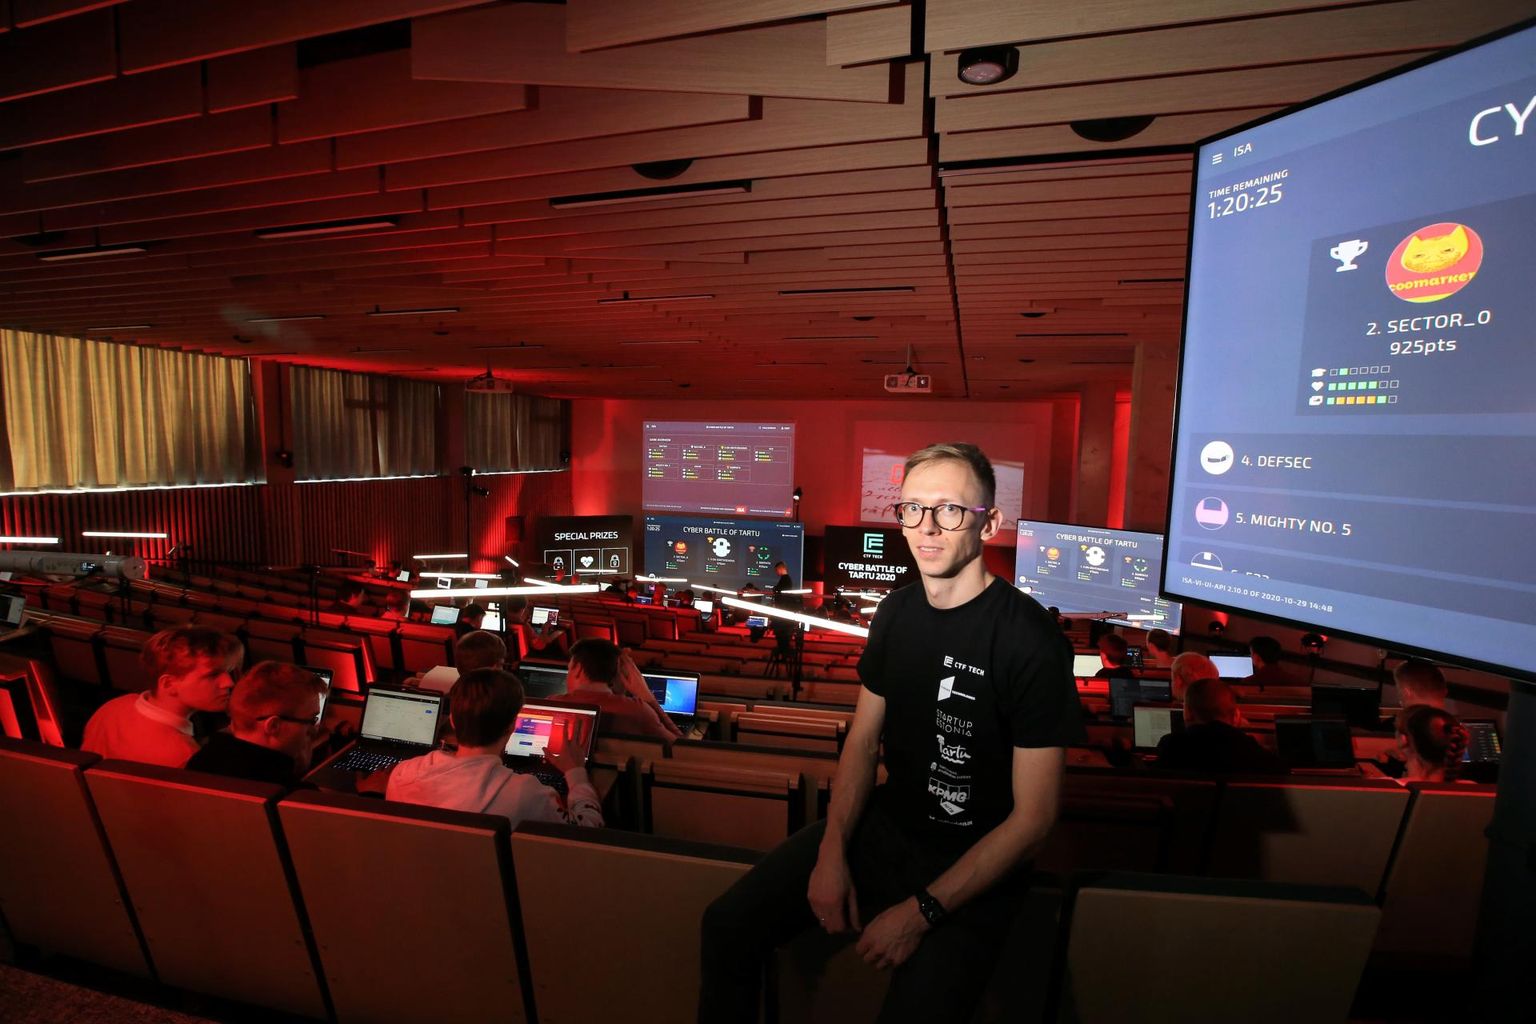 Küberkaitseõppuse Cyber Battle of Tartu korraldaja Hans Lõugas loodab, et noortes süttib tuluke ja nad asuvad küberkaitset õppima, mis avab neile kogu maailma.